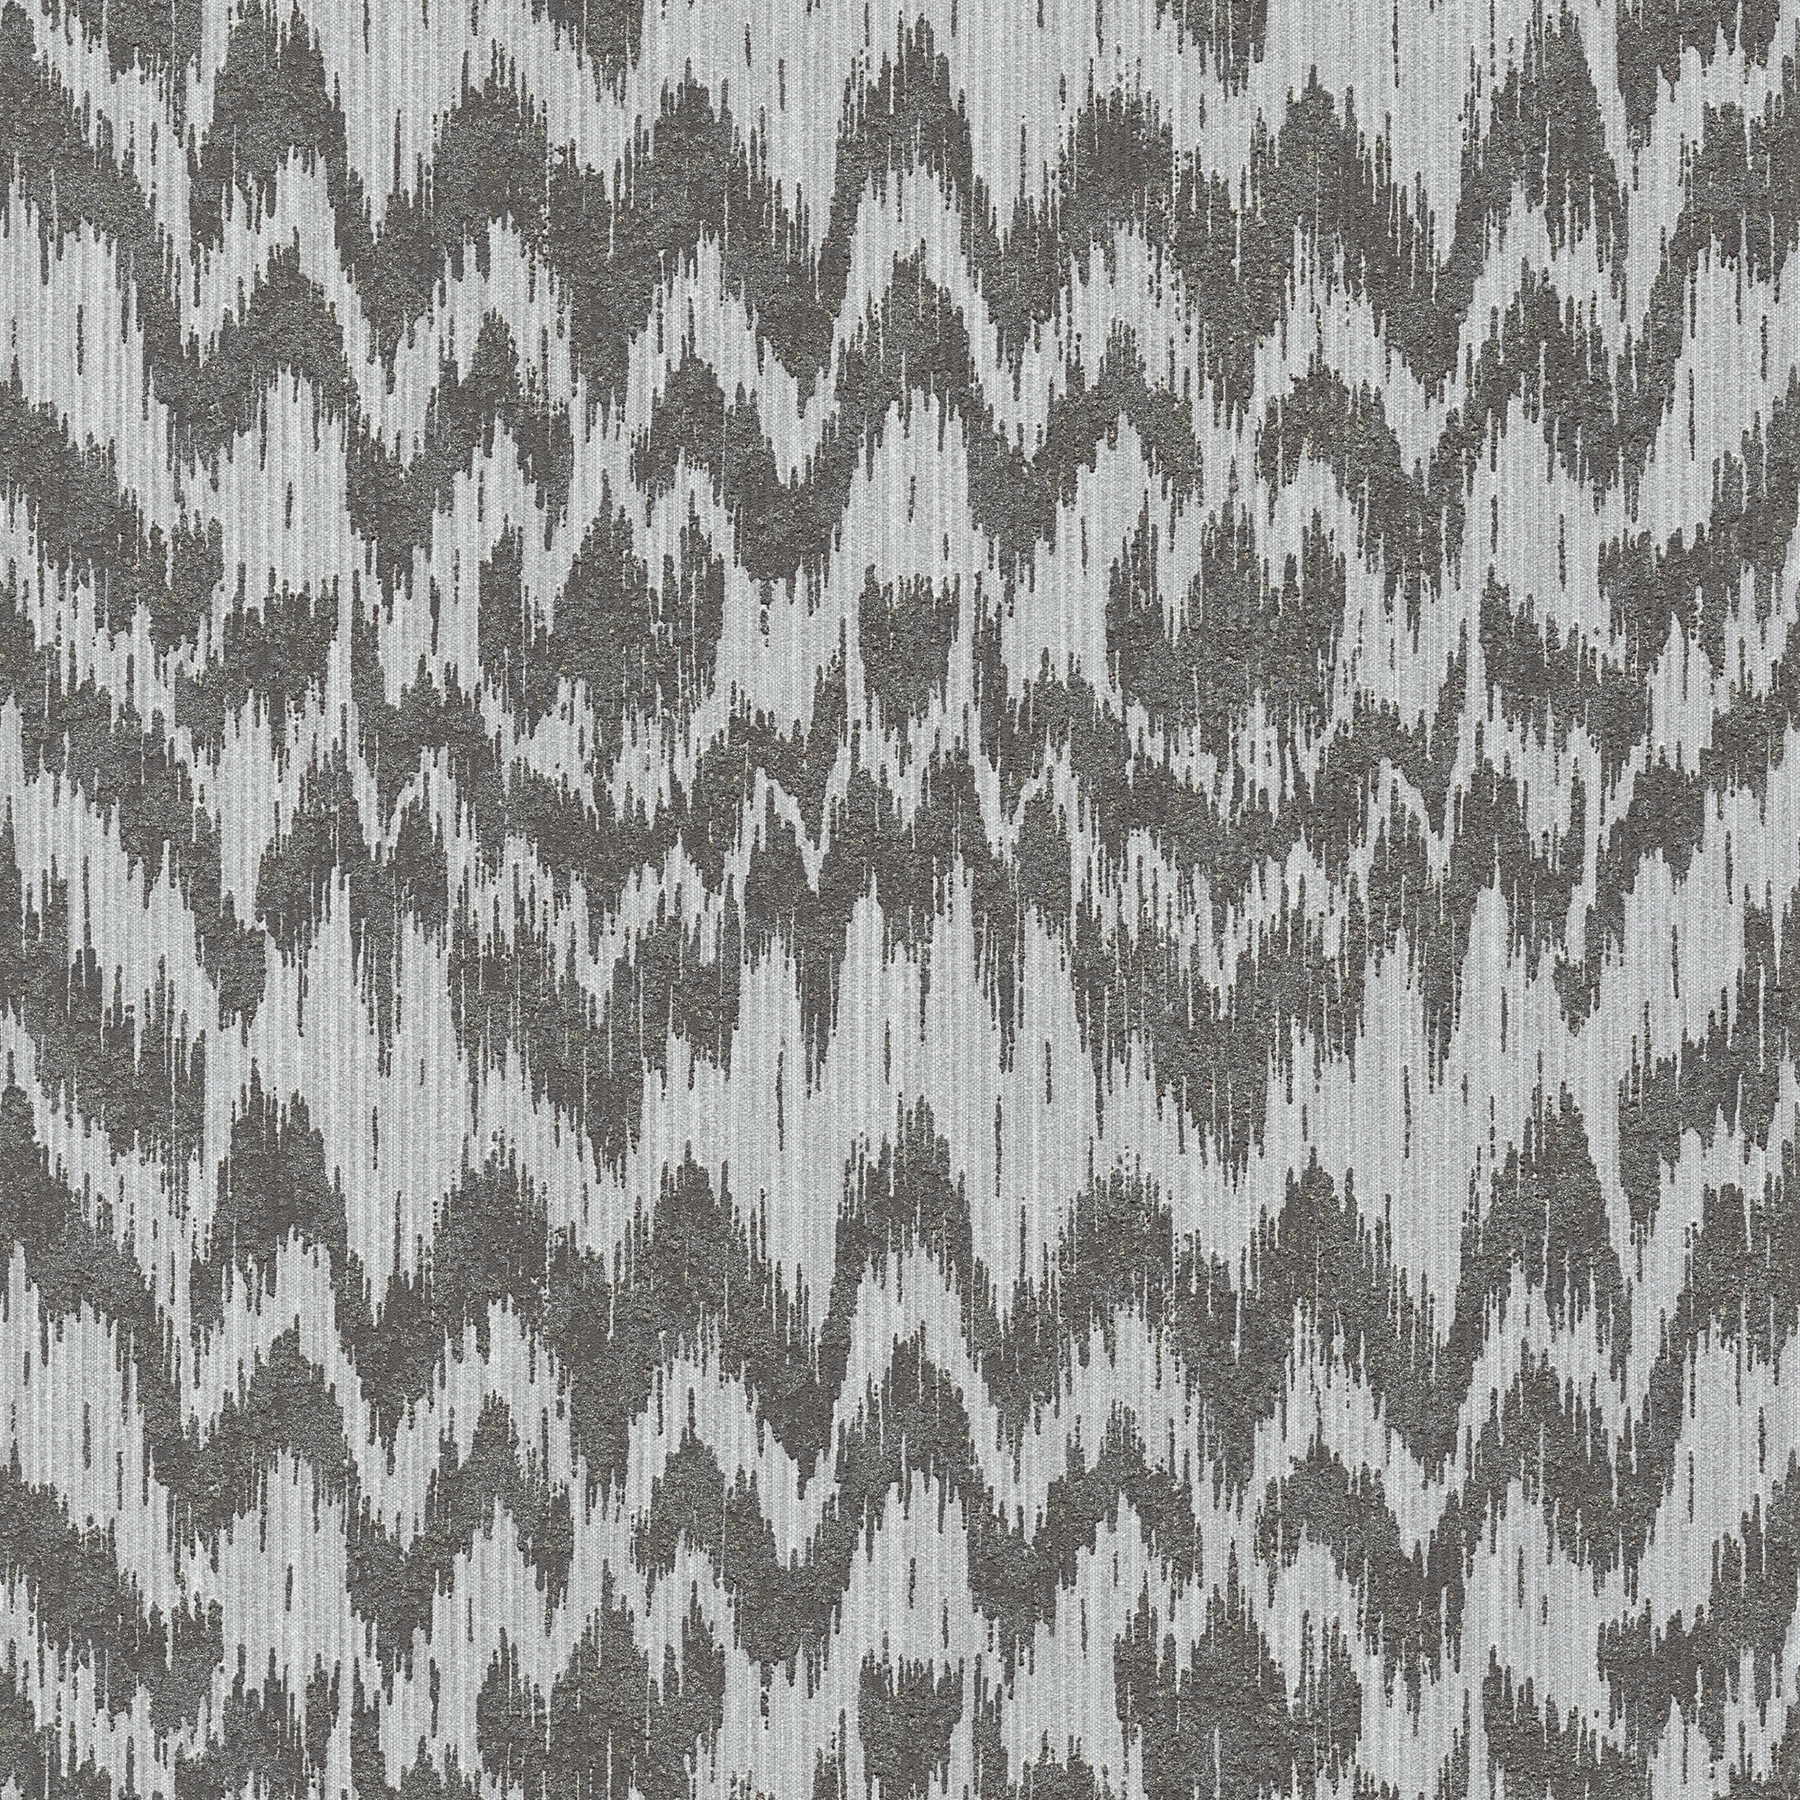 Non-woven wallpaper ethnic style with metallic textile design - grey, metallic
